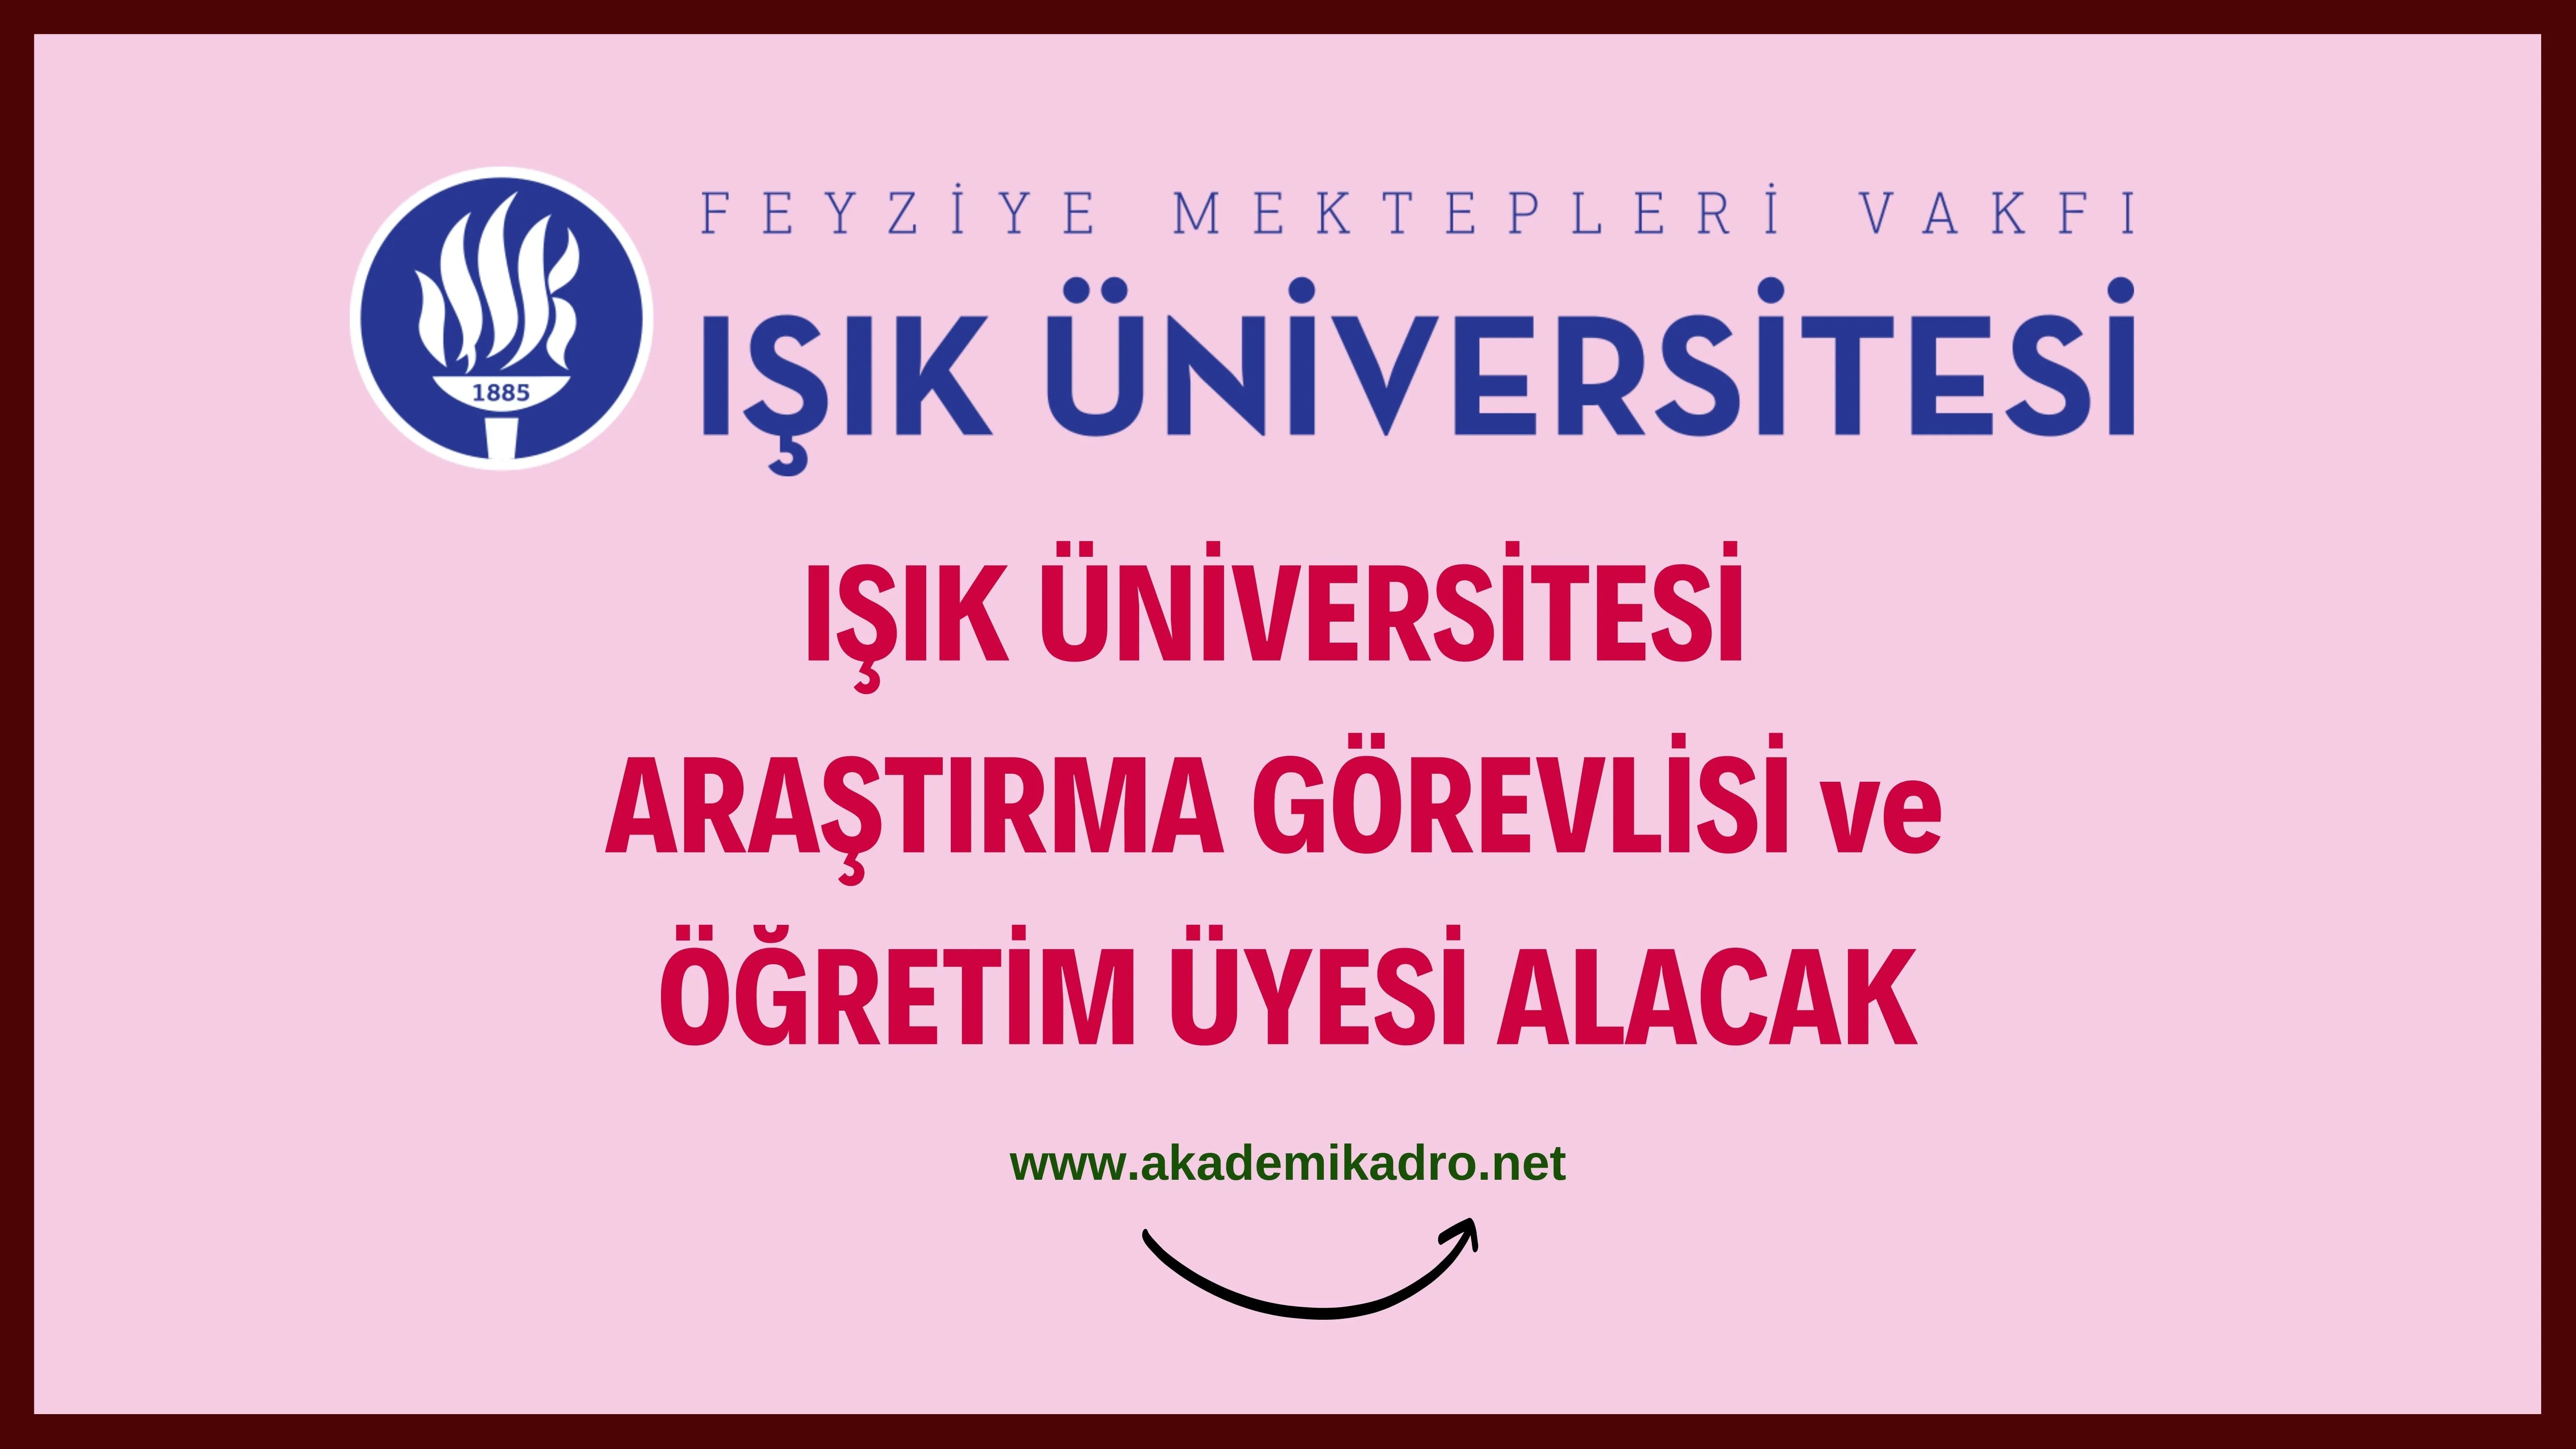 Işık Üniversitesi 2 Araştırma görevlisi ve öğretim üyesi alacak.